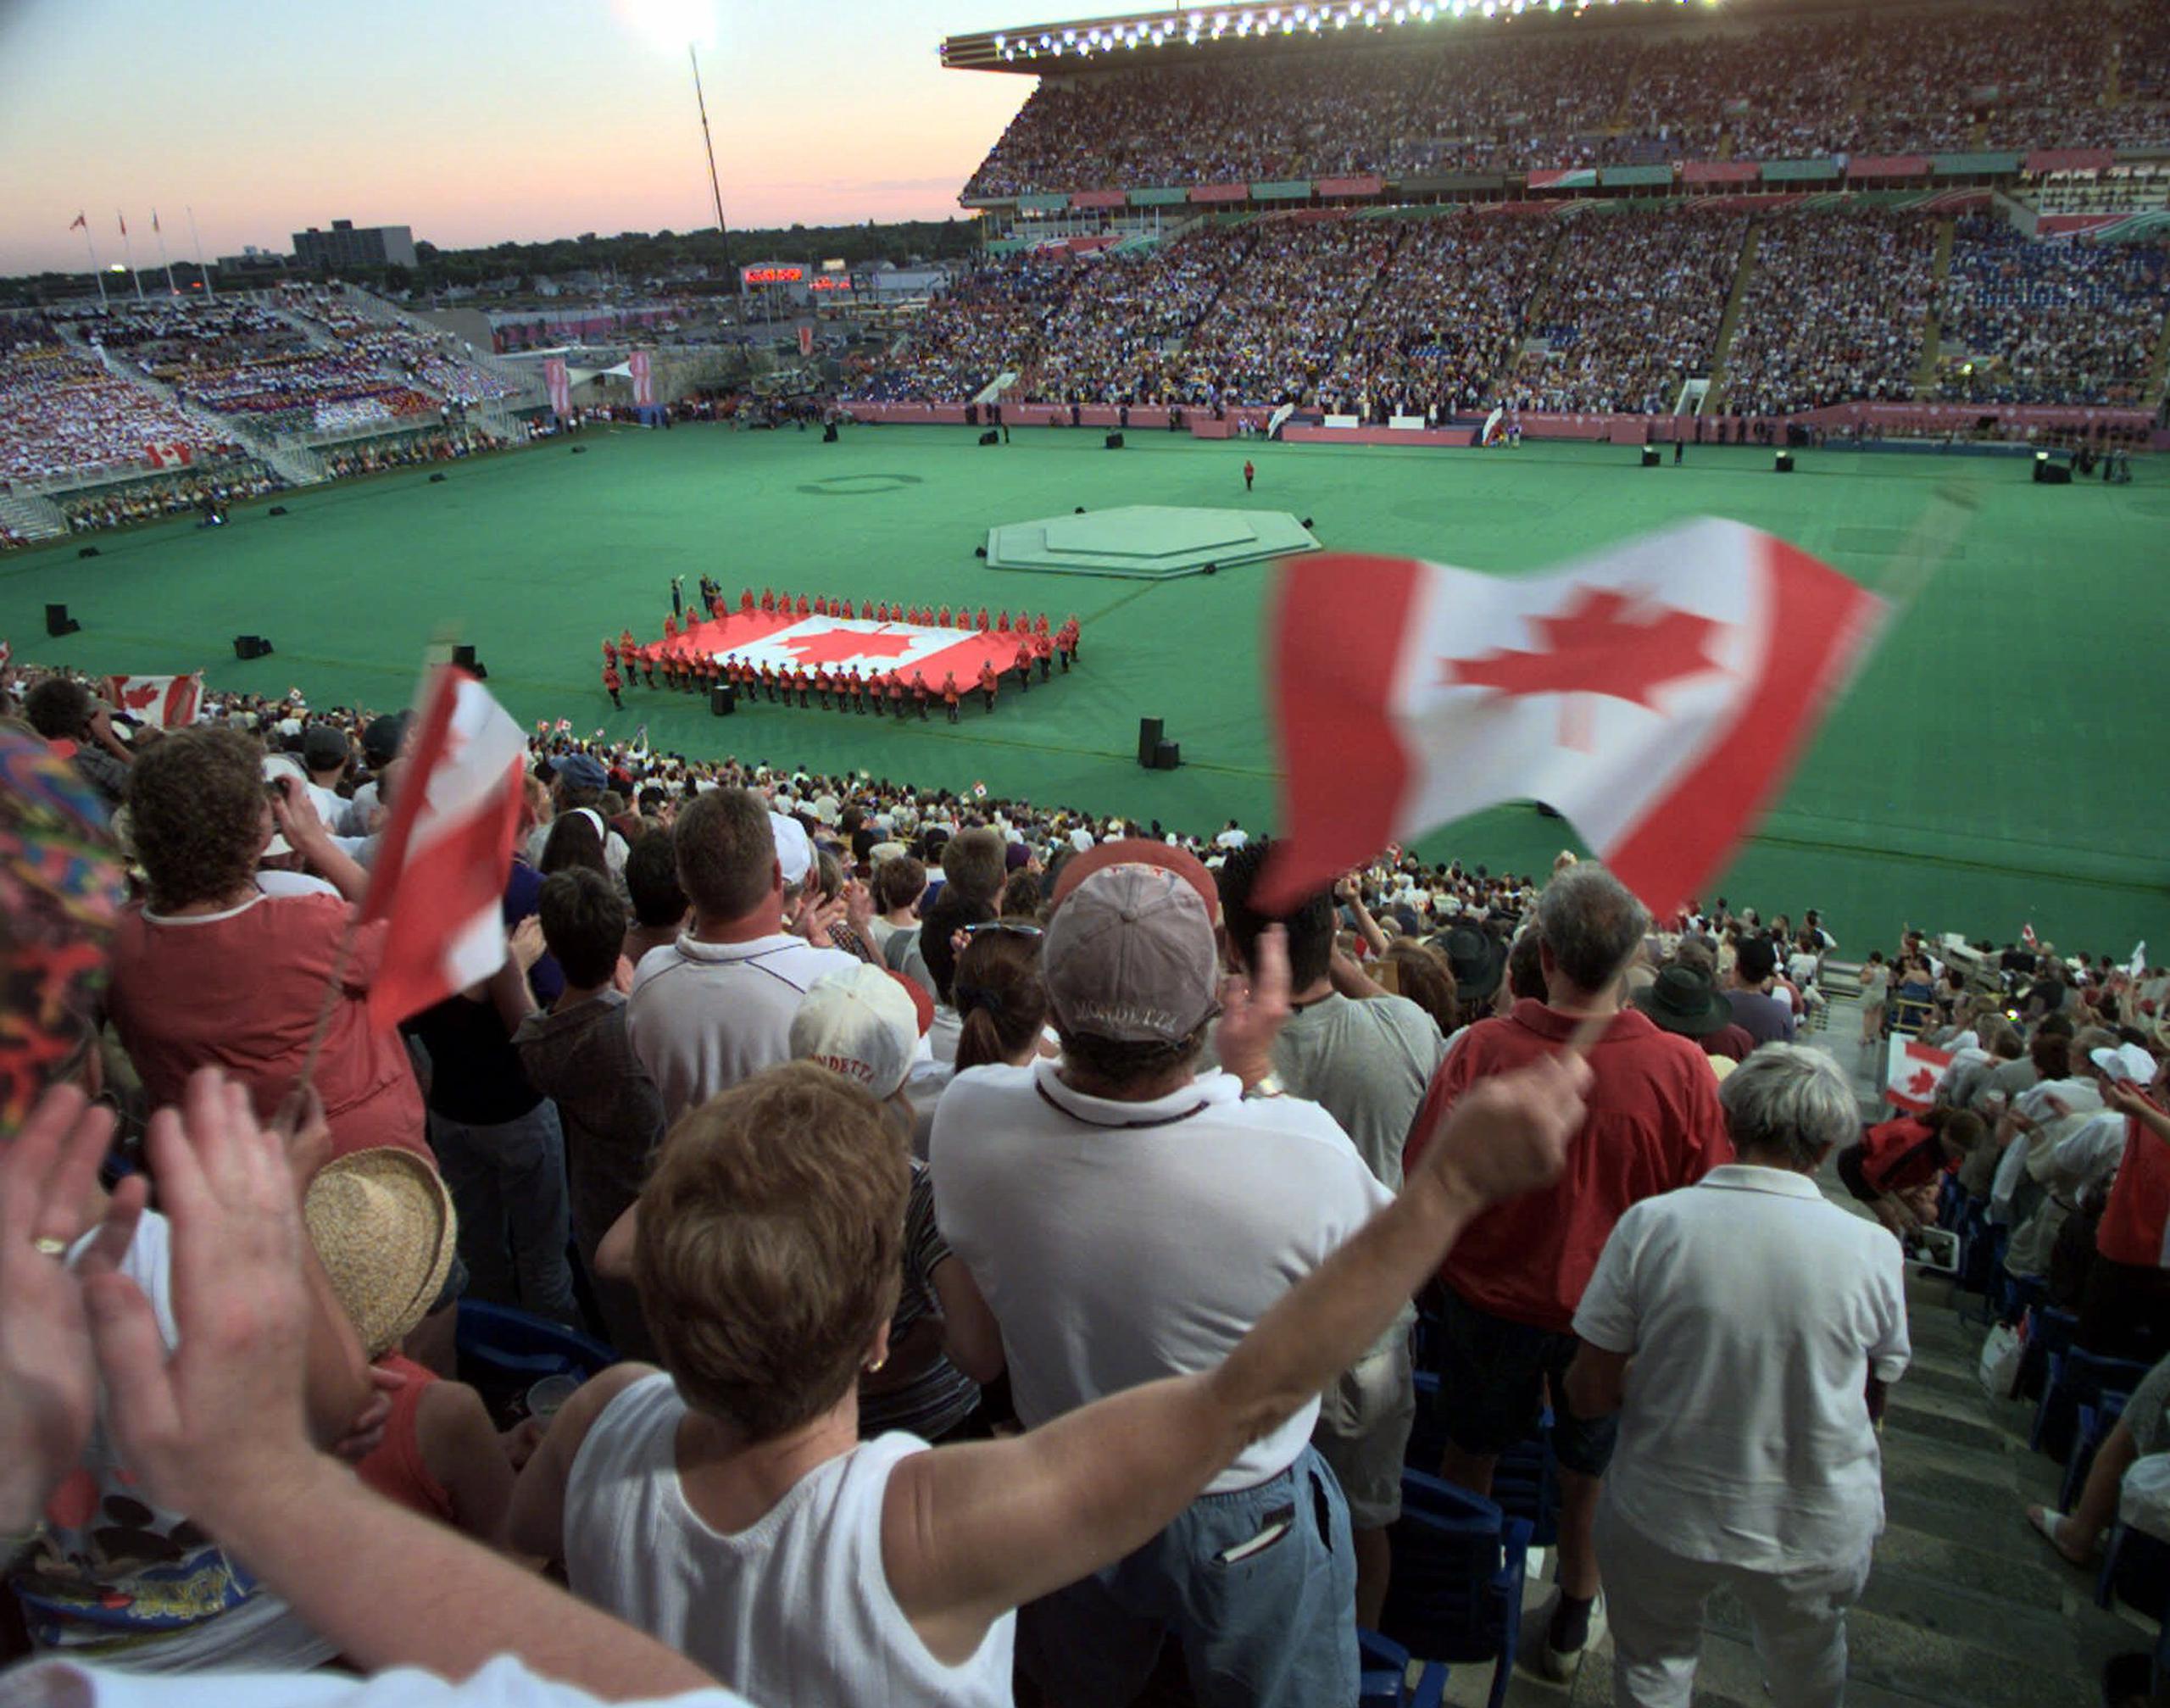 El Comité Olímpico de Canadá tomó la decisión de no enviar atletas a Tokio 2020 si los juegos se celebran este año. Aconsejó al Comité Olímpico Internacional suspender la Olimpiada por un año.